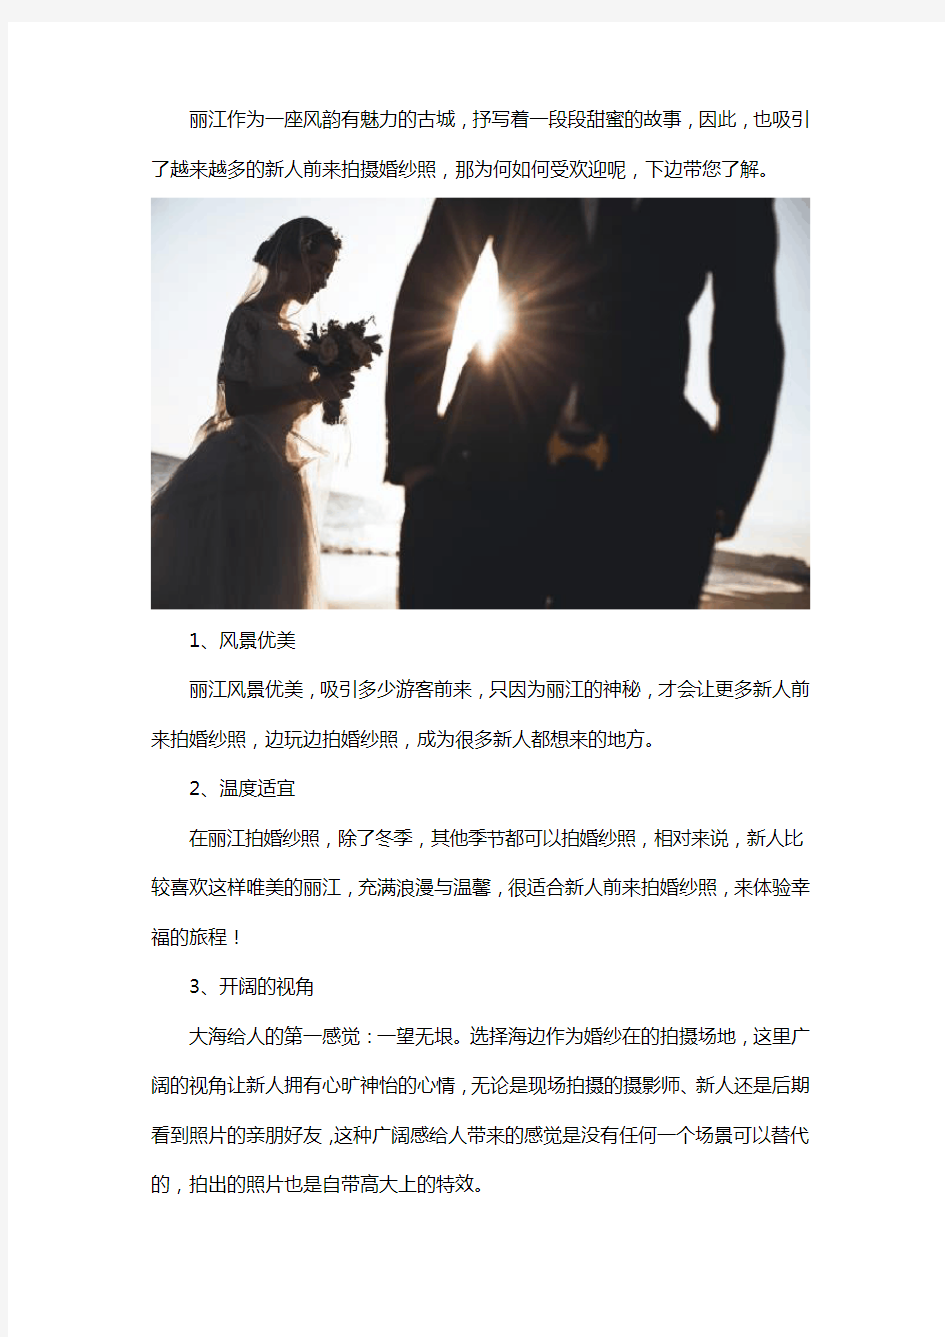 为什么那么多人喜欢去丽江拍婚纱照